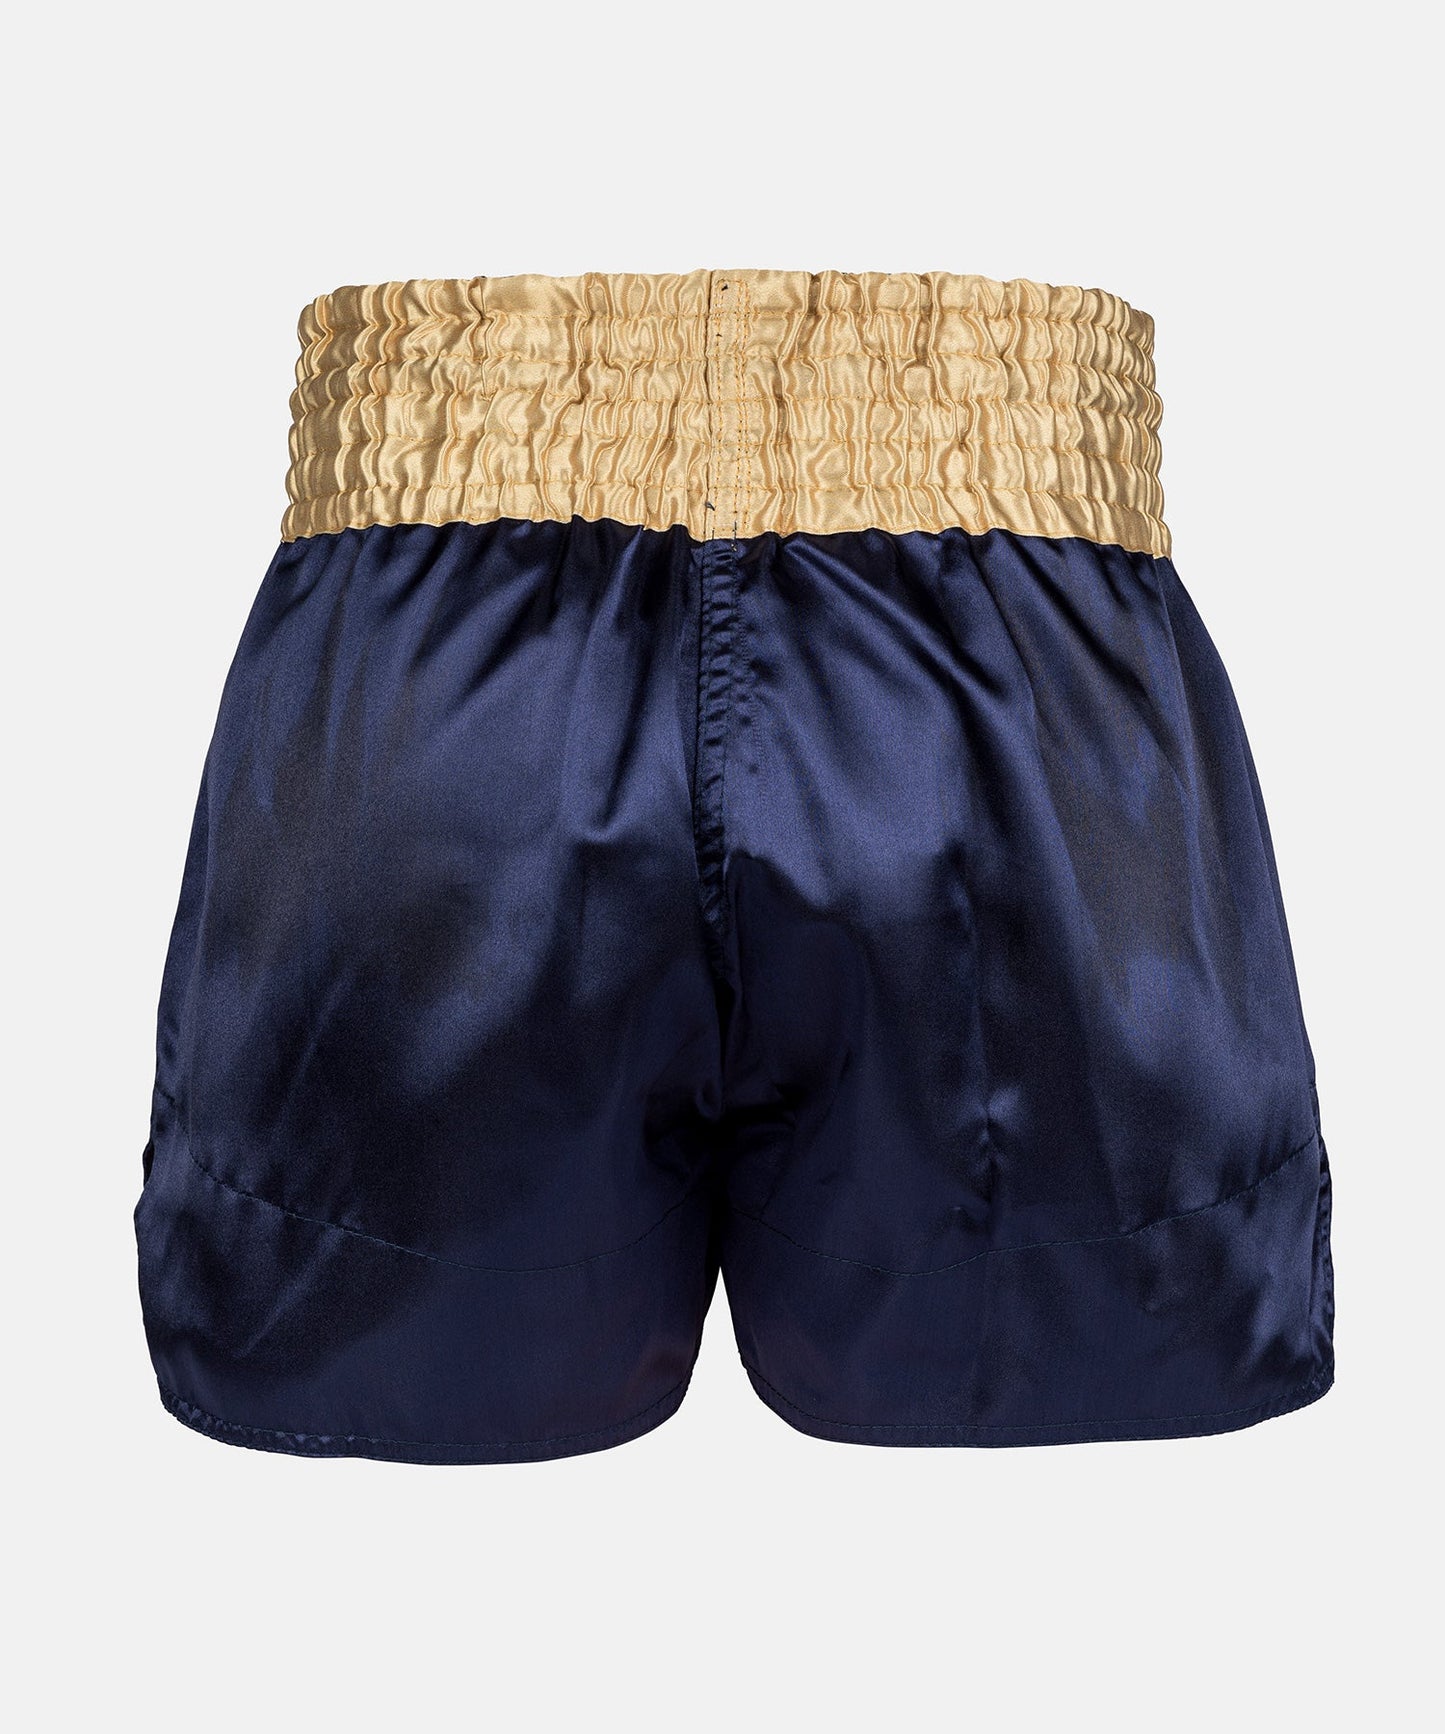 Venum Classic Muay Thai Shorts - Marineblauw/Goud